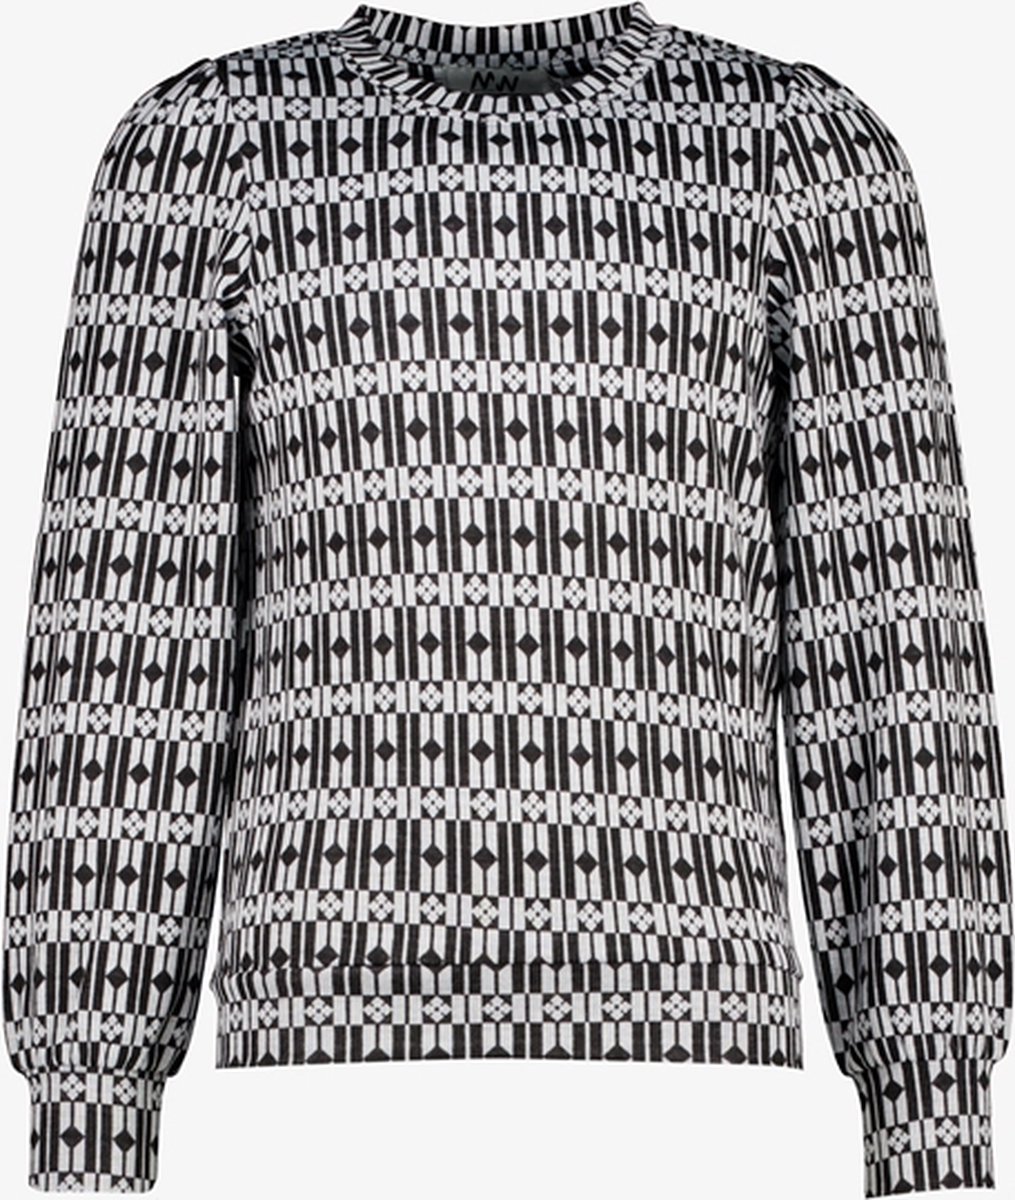 MyWay meisjes trui met print zwart/wit - Maat 134/140